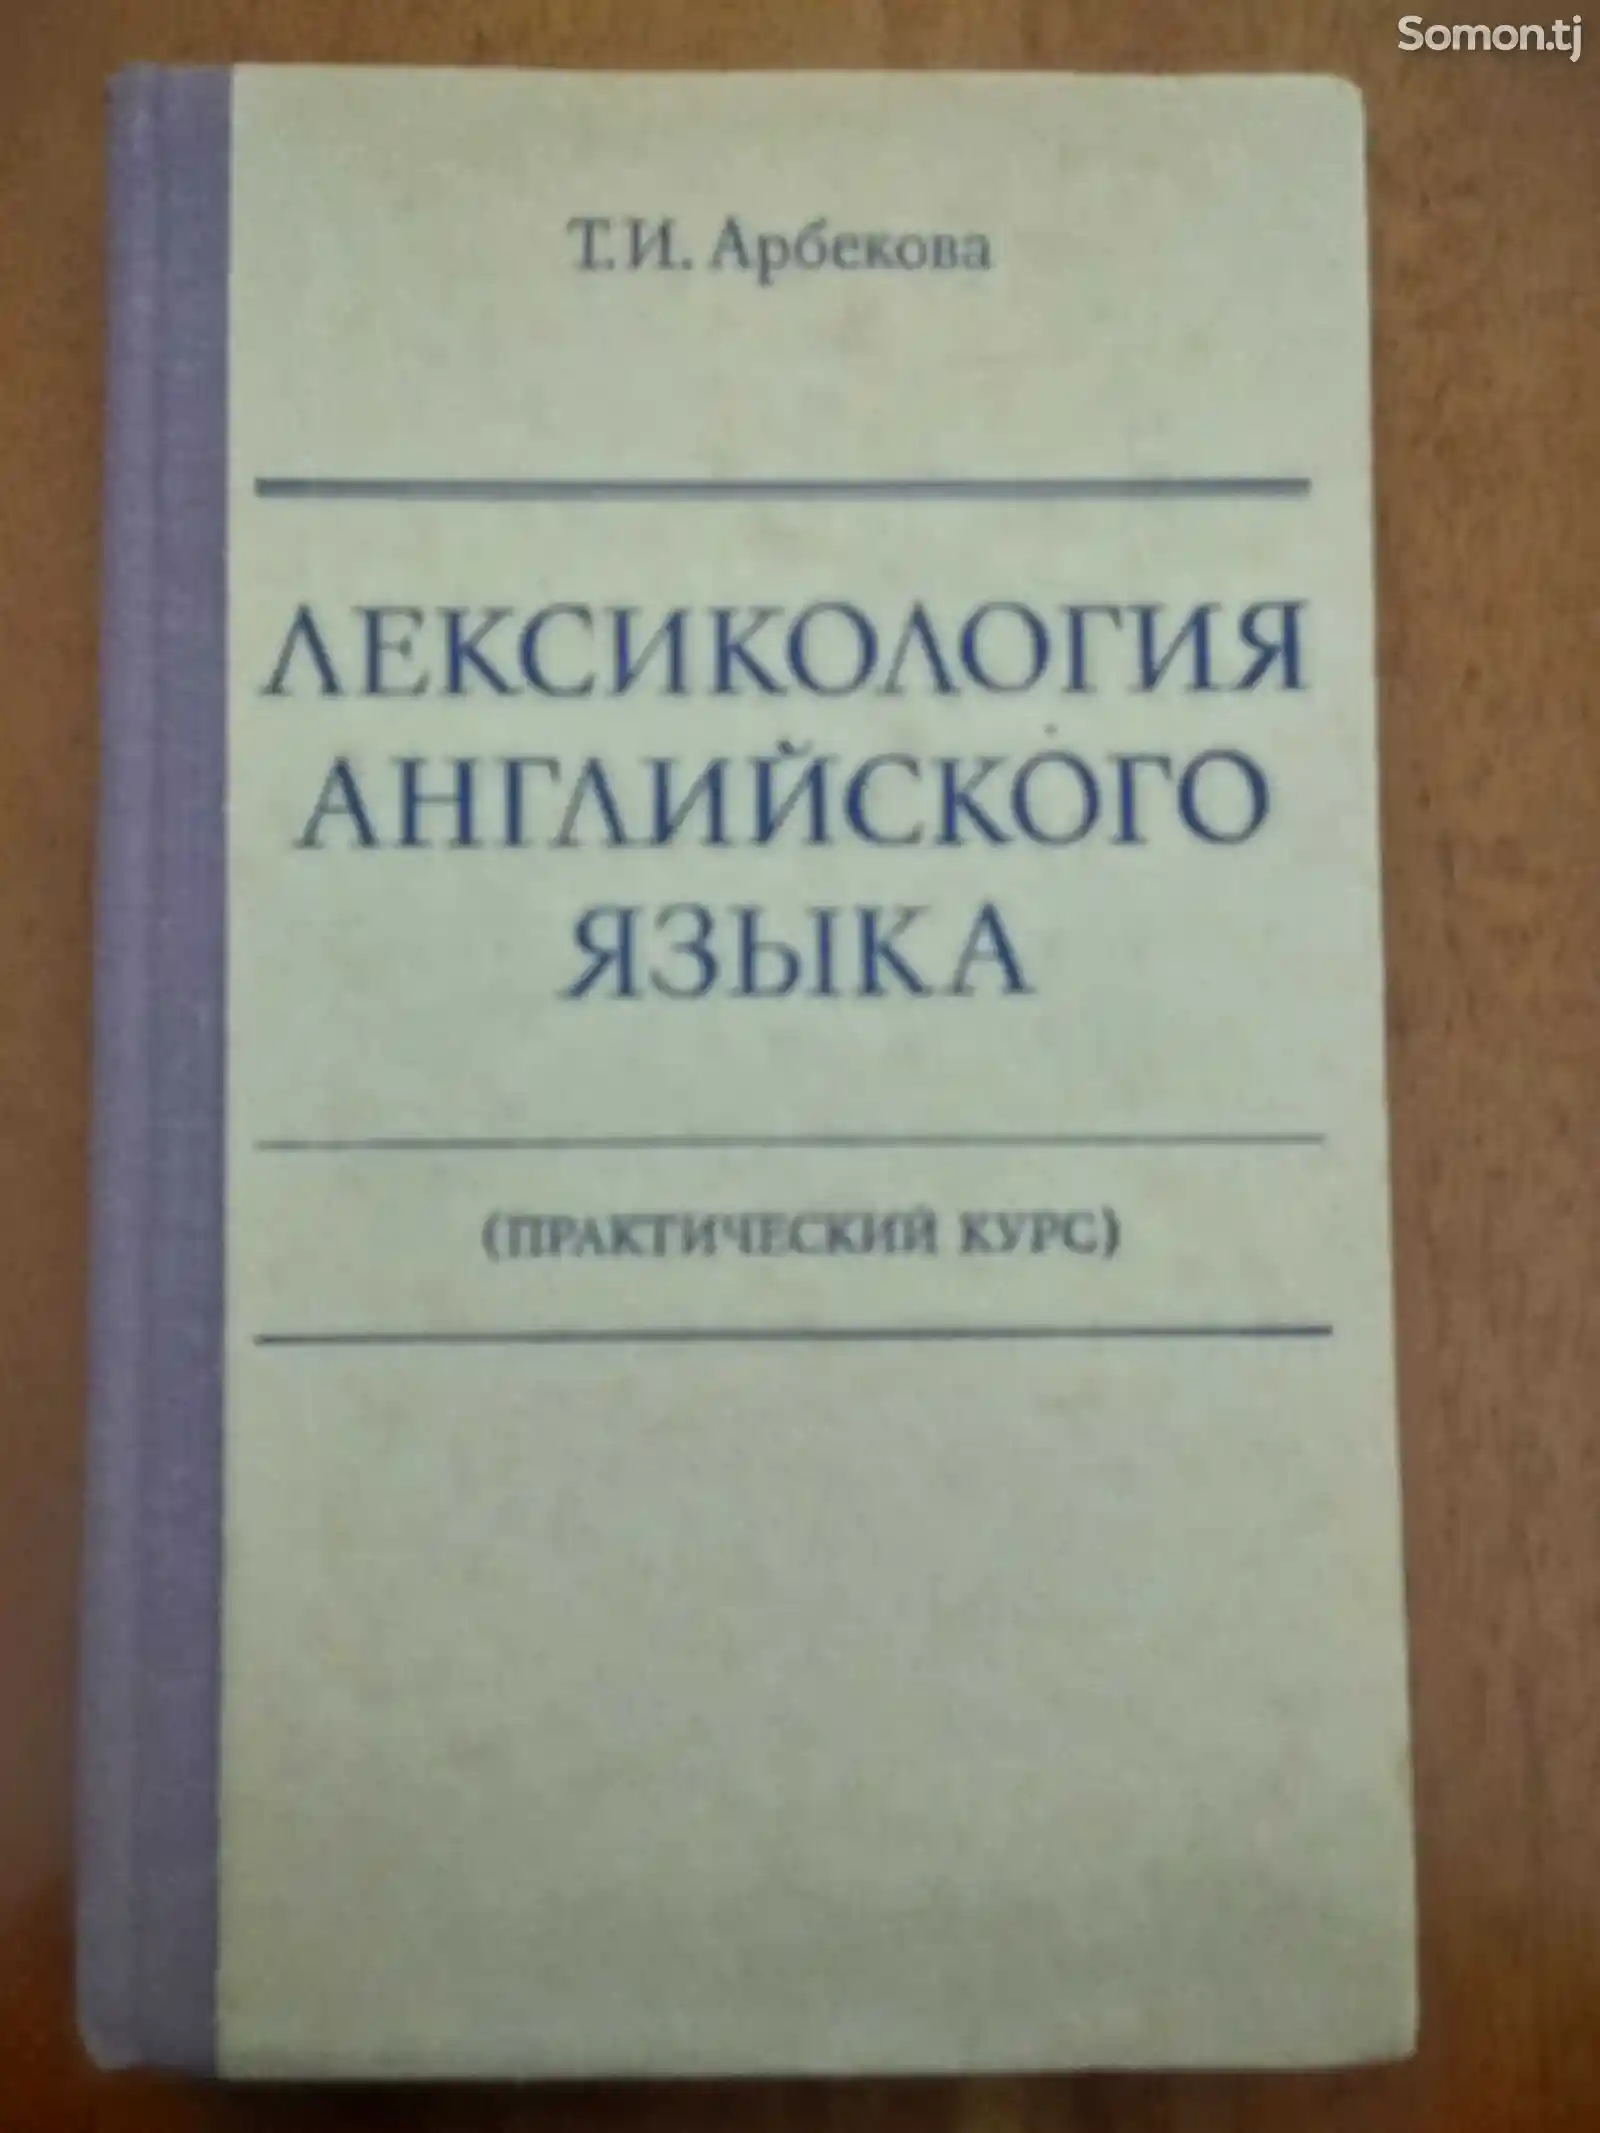 Книга Т.И.Арбекова Лексикология Английского языка